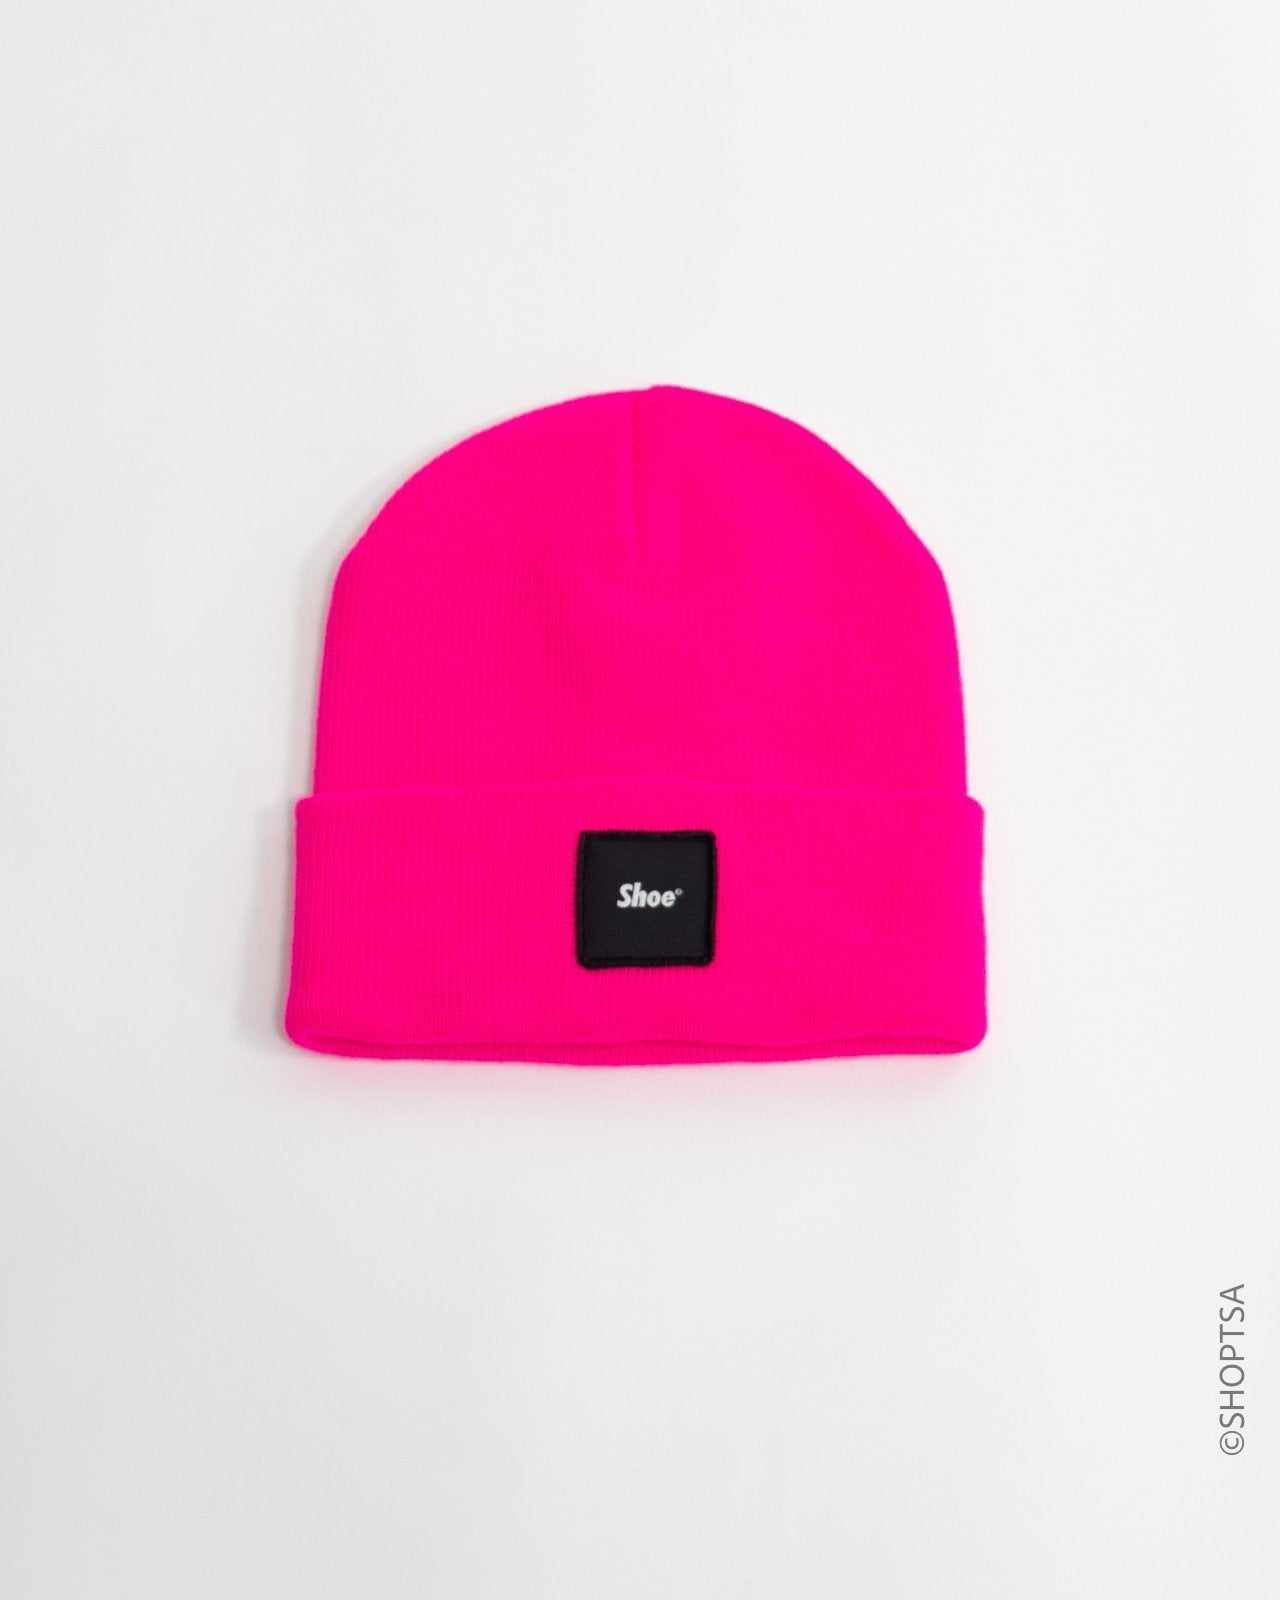 Colorful cap - SHOE